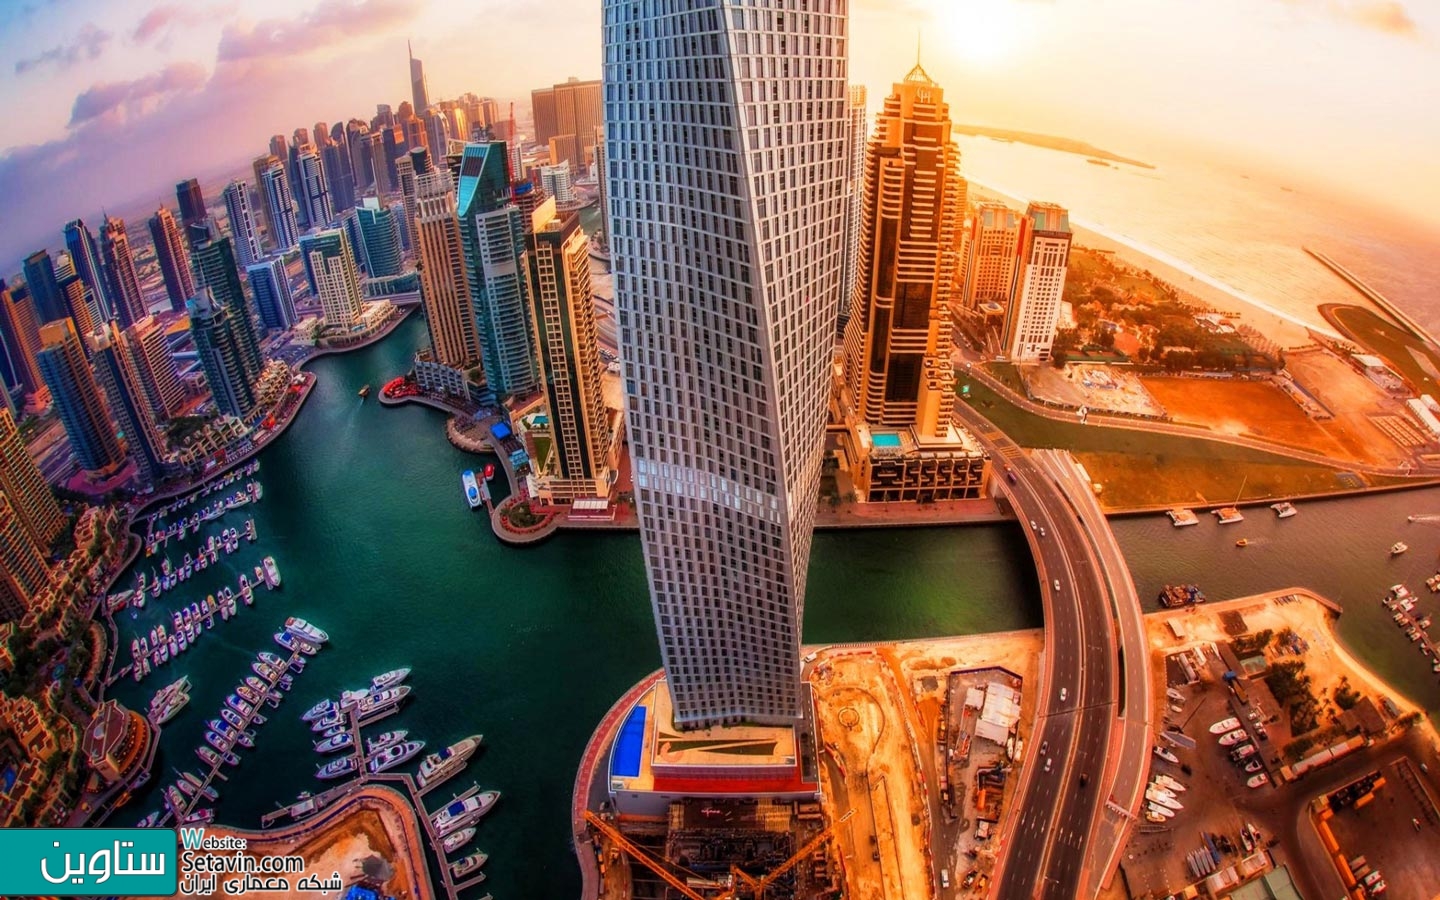 امارات متحده عربی , معماری دبی , معماری امارات , معماری در دبی , Dubai , Architecture of Dubai , برج , Cayan ,  Skidmore, Owings & Merrill , SOM , امارات متحده عربی